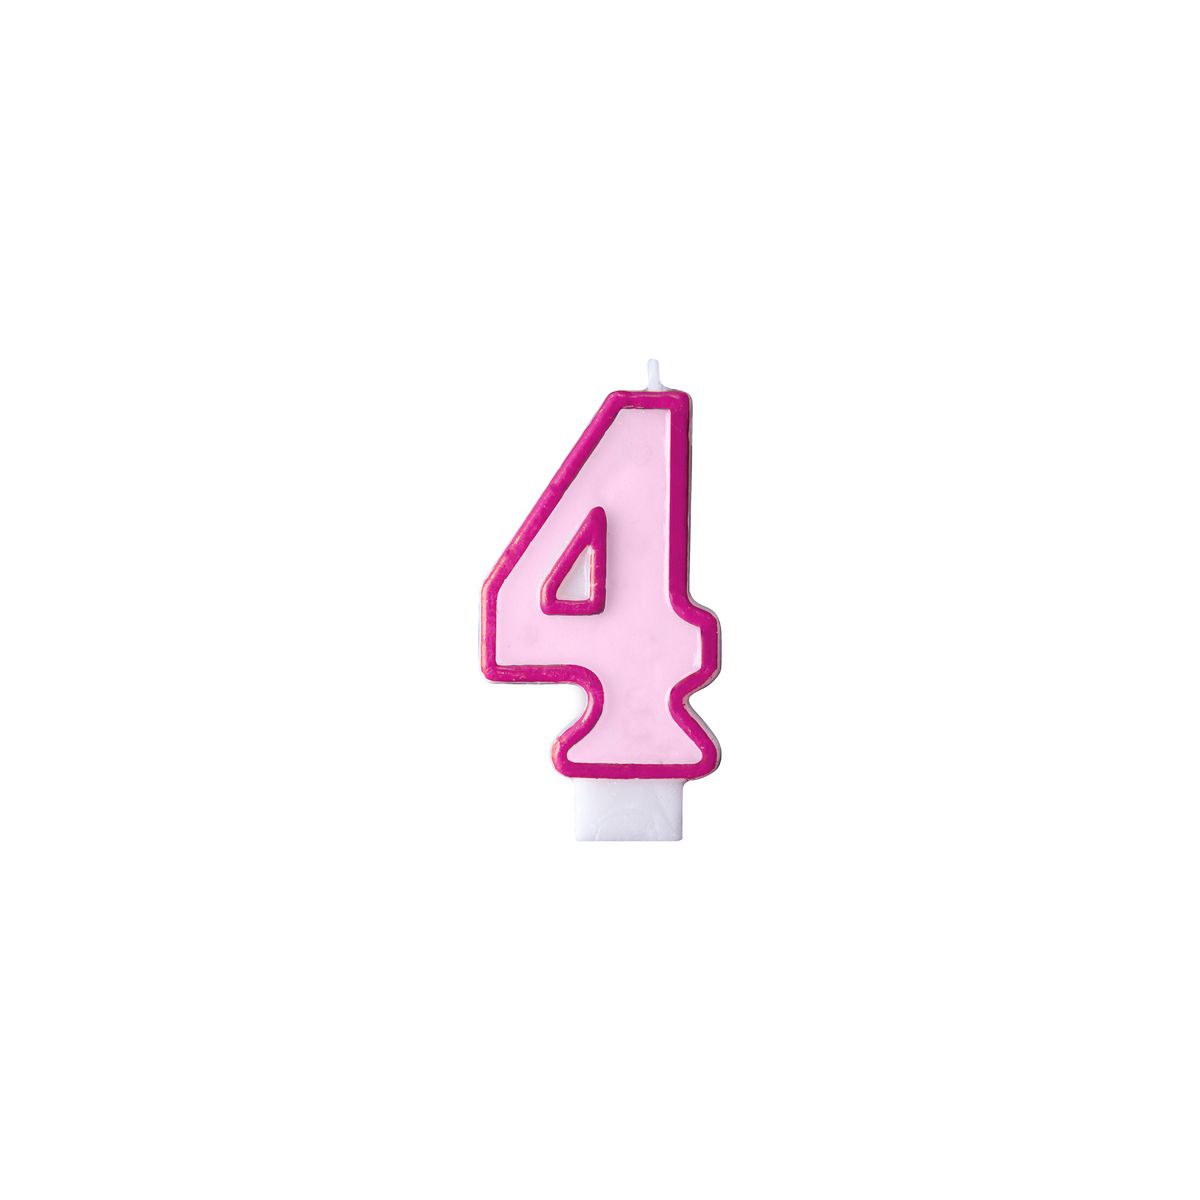 Świeczka urodzinowa Cyferka 4 w kolorze różowym 7 centymetrów Partydeco (SCU1-4-006)